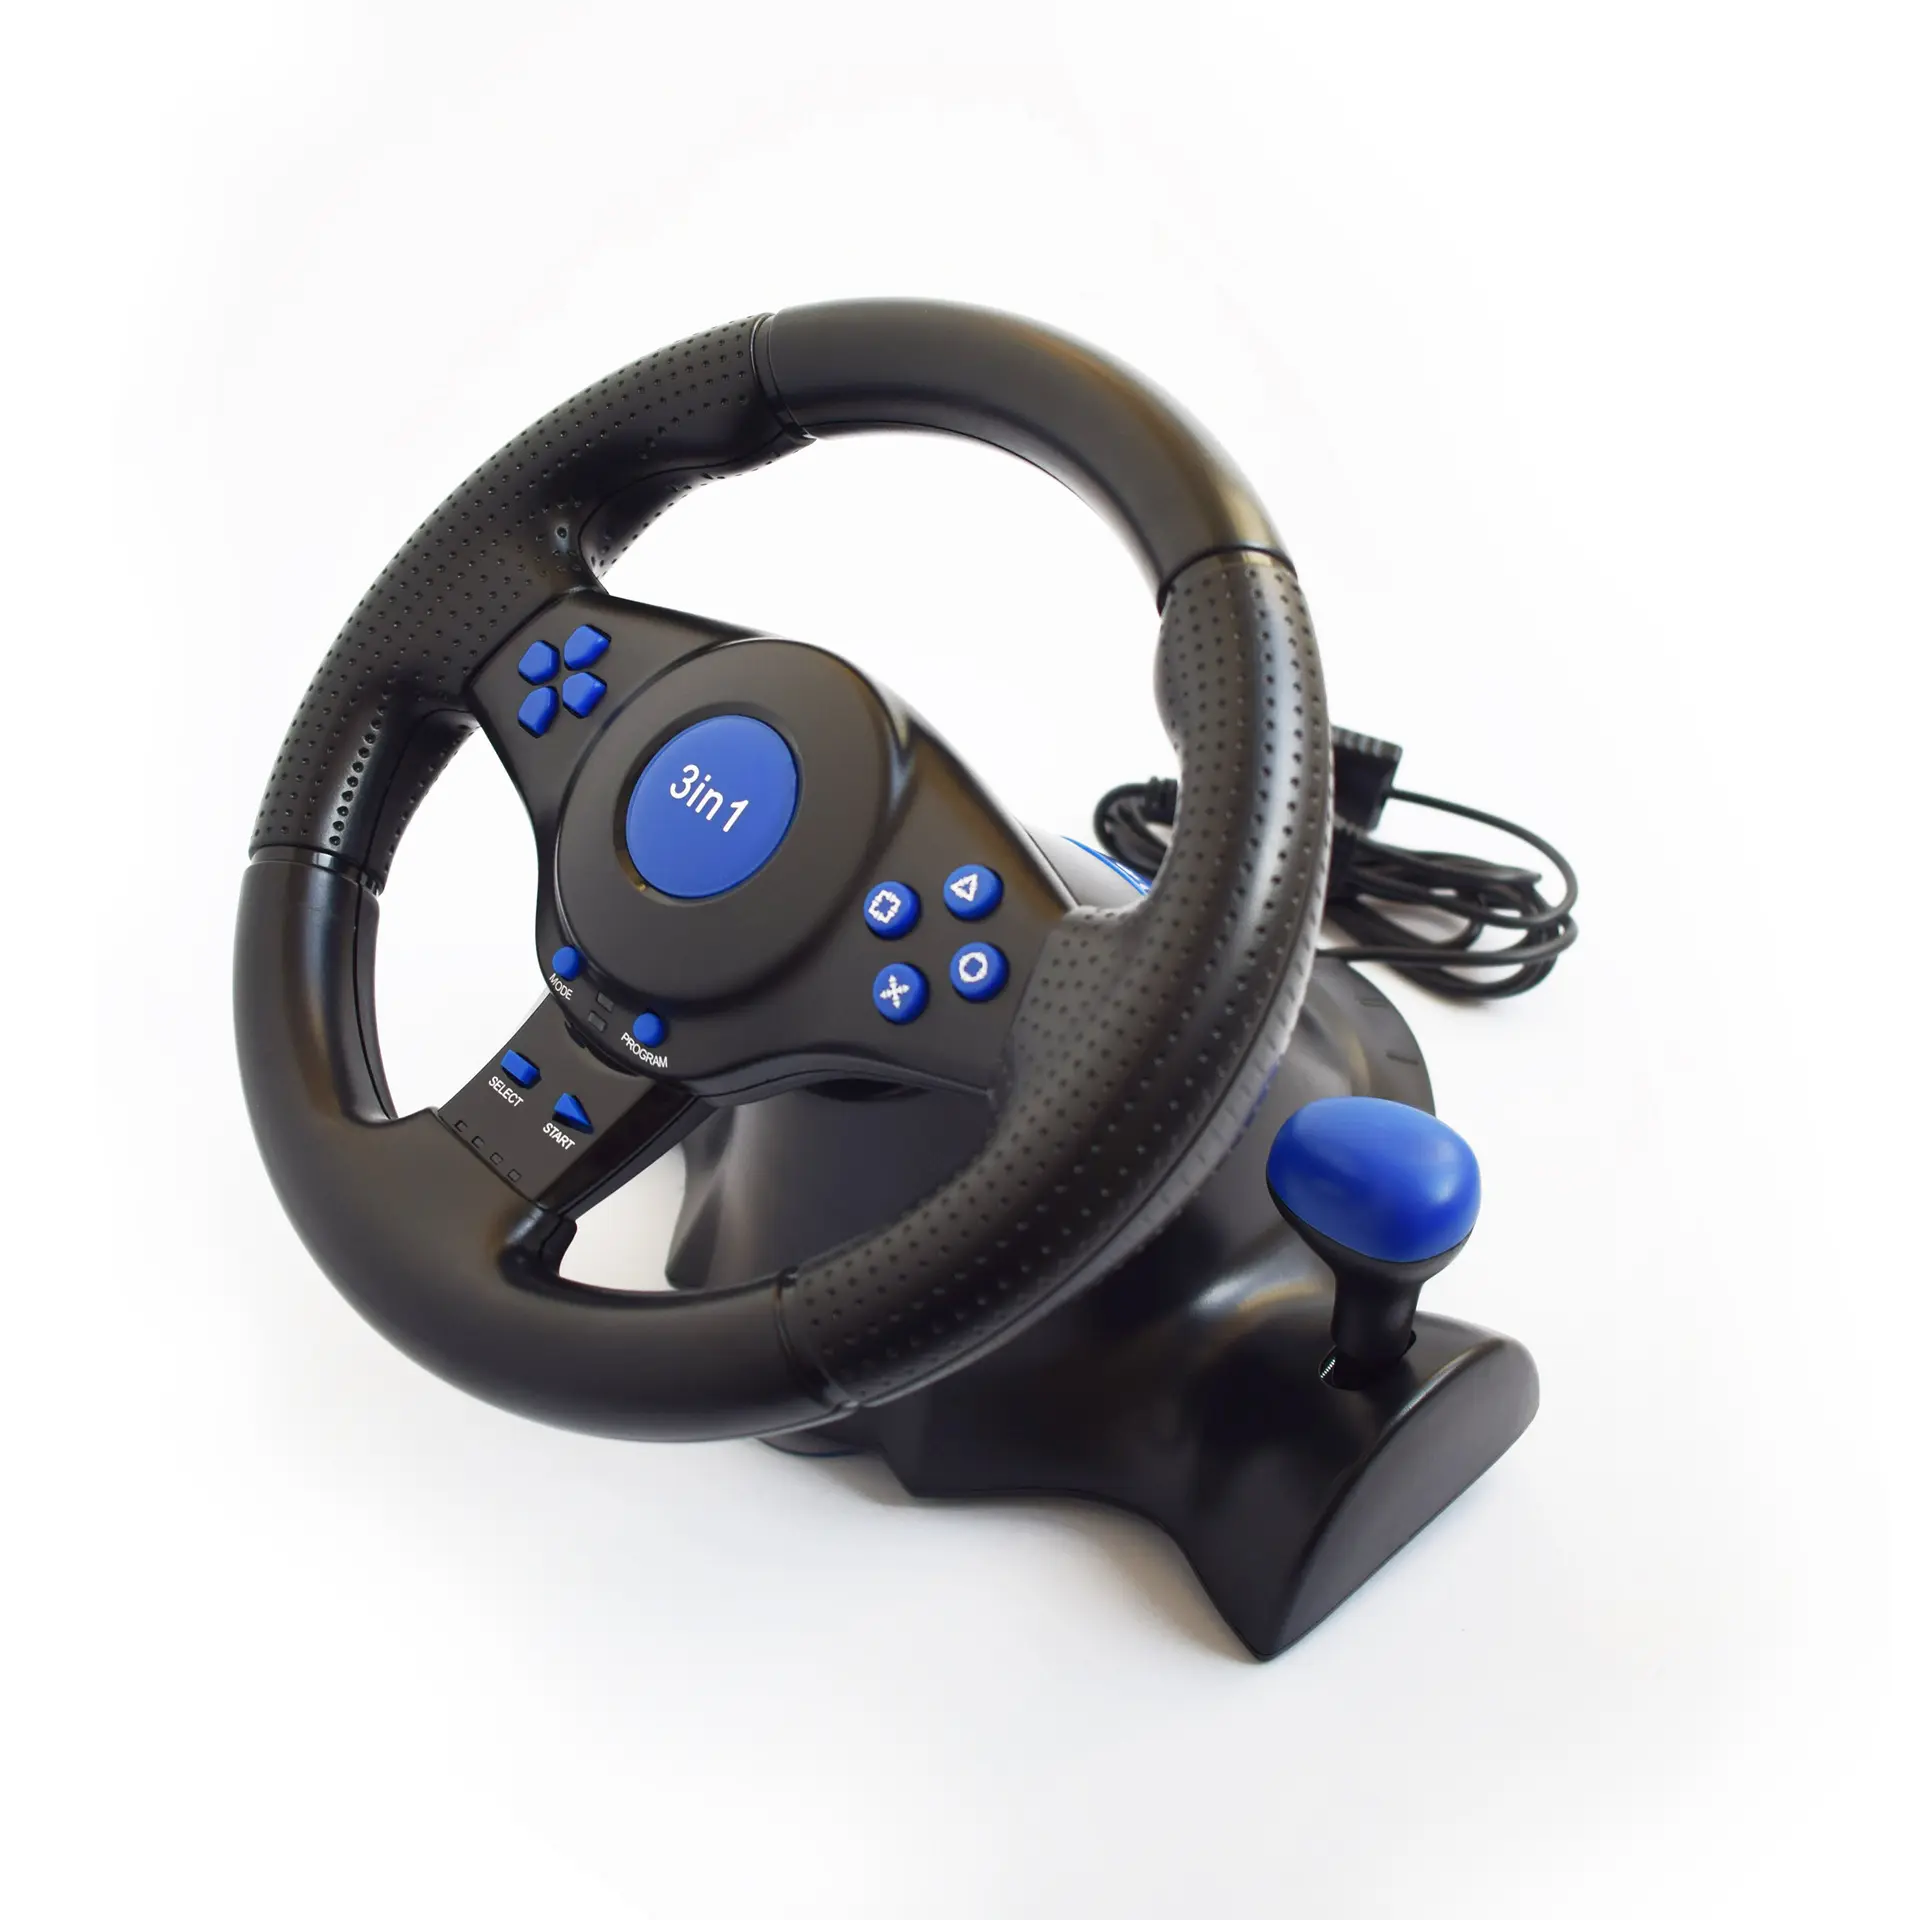 Ps3 bilgisayar oyunları için RALAN PS2 çift bağlantı usb pedal sistemi ile direksiyon araba yarışı